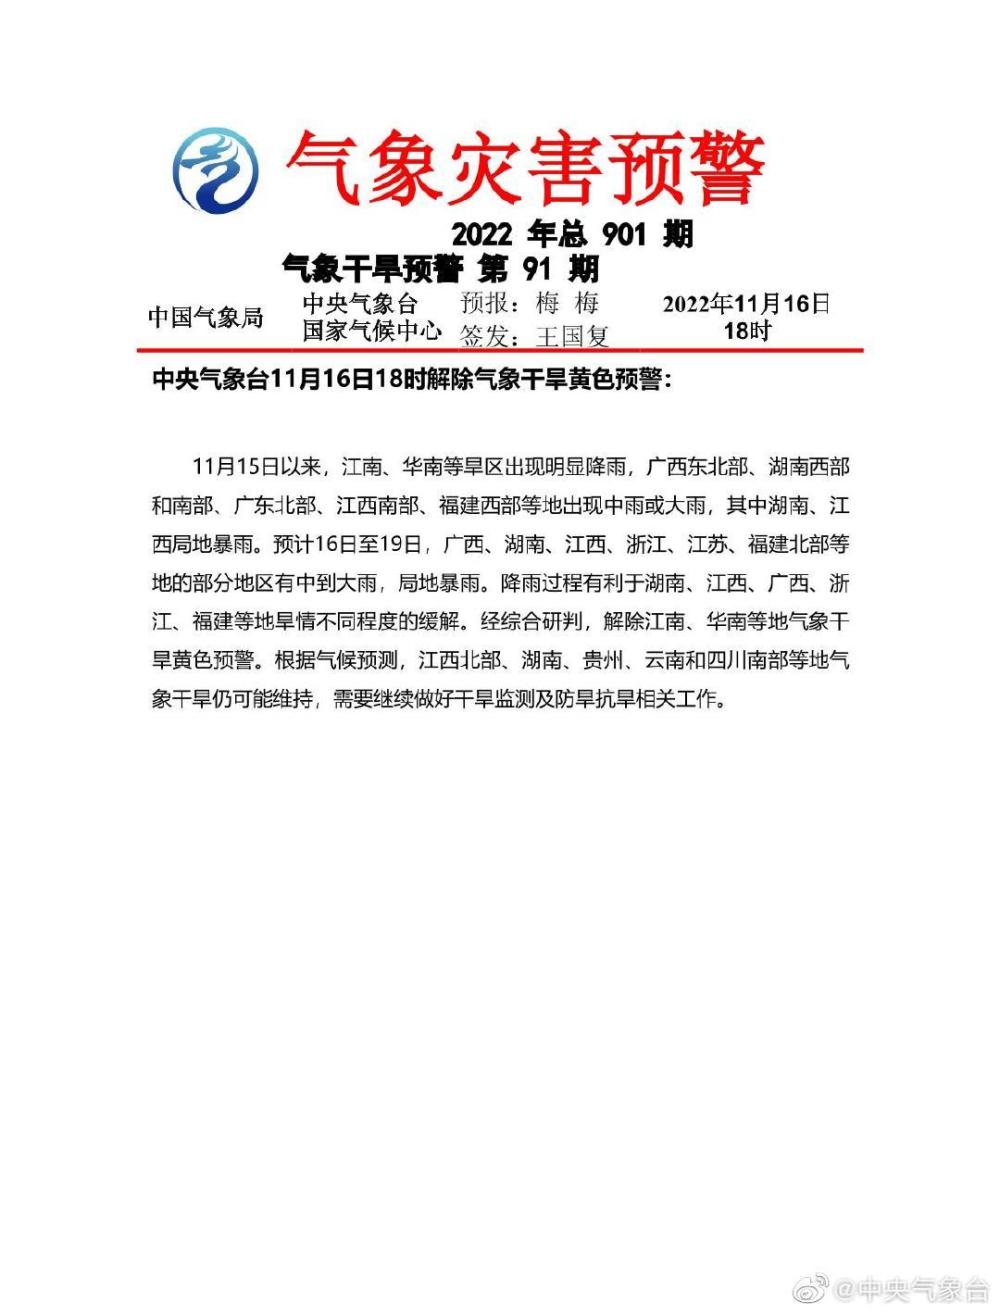 钓鱼钓到一级保护动物江豚？岳阳市和湘阴县两级警方正在核查关于原耽人物的作文